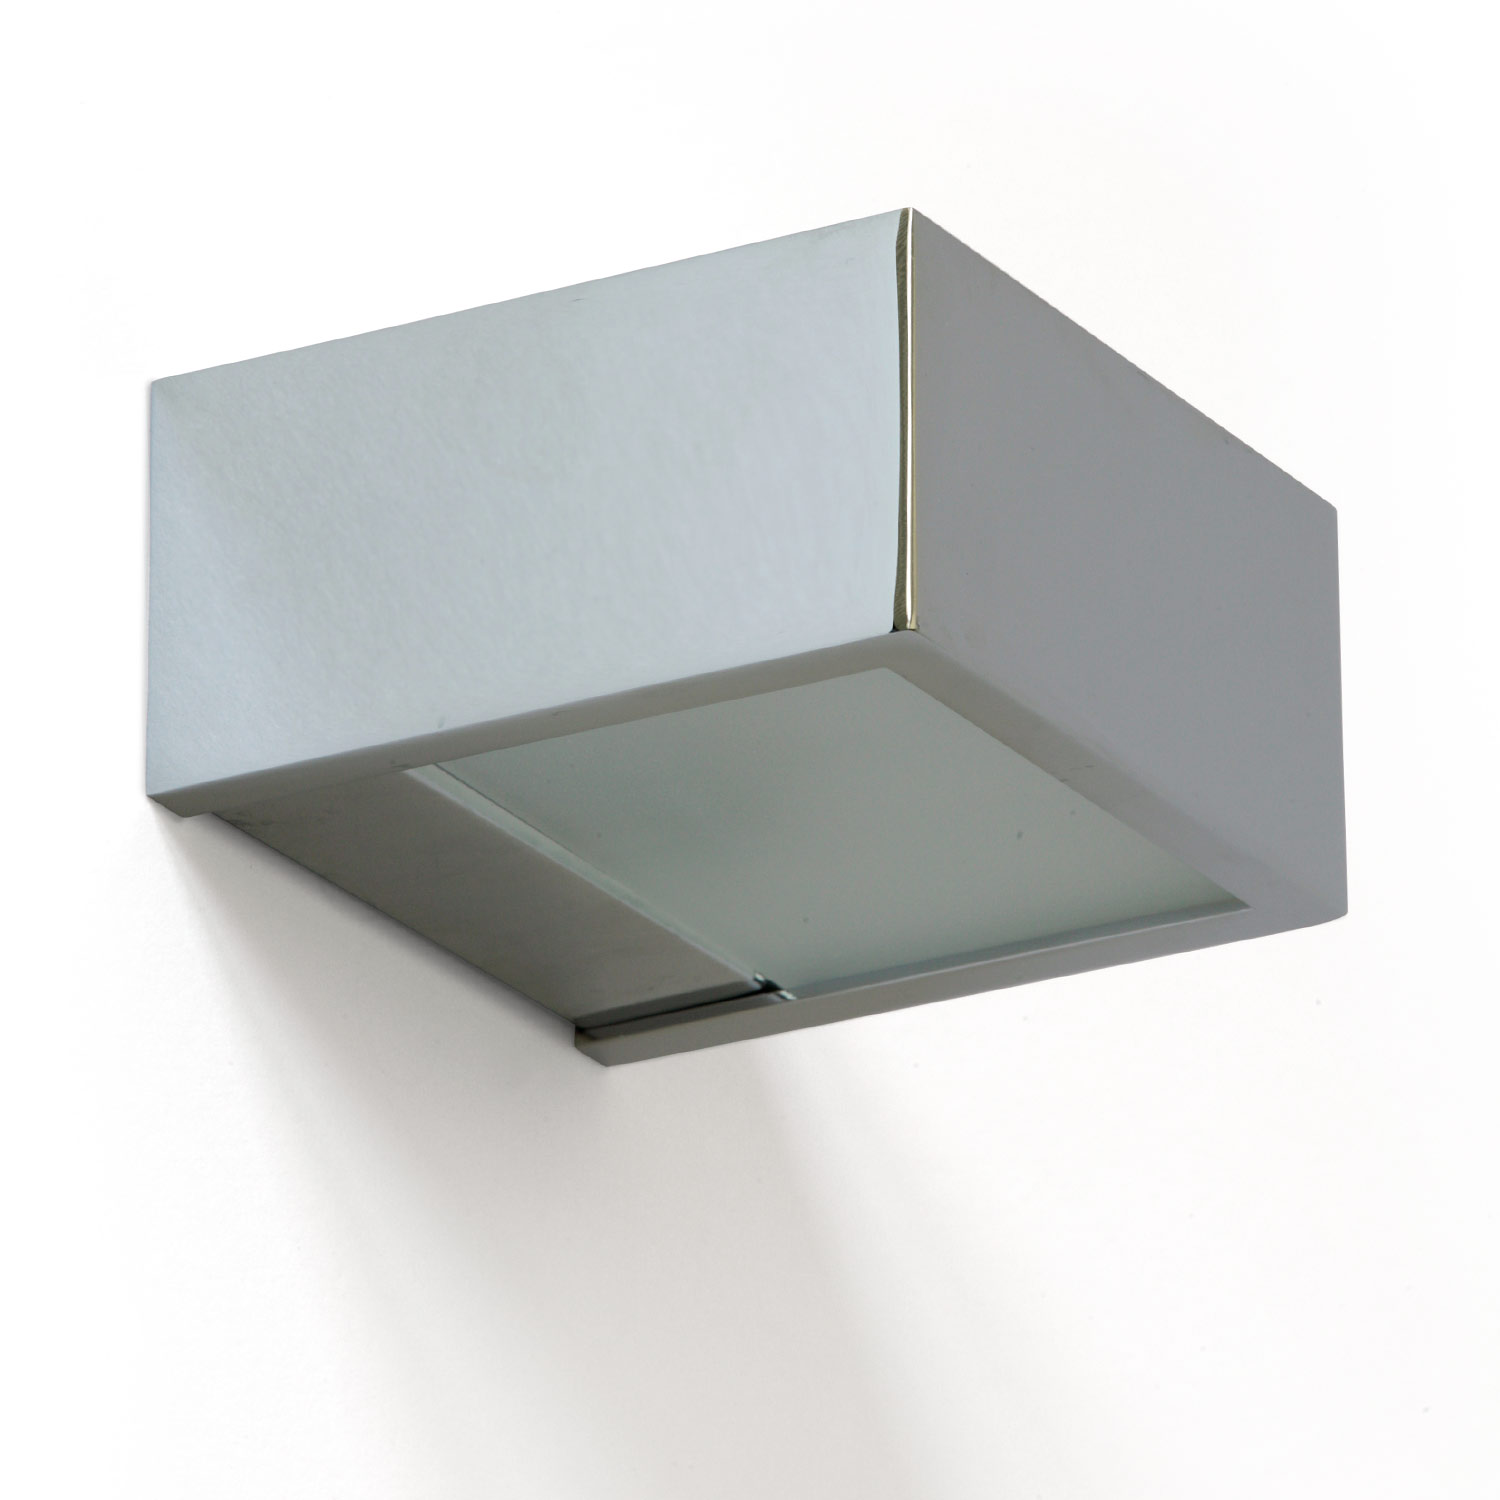 QUAD Wandleuchte oder Spiegelleuchte Bad: Verchromte Bad-Wandleuchte mit Up-Down-Licht: Modell 1 mit 10 cm Breite